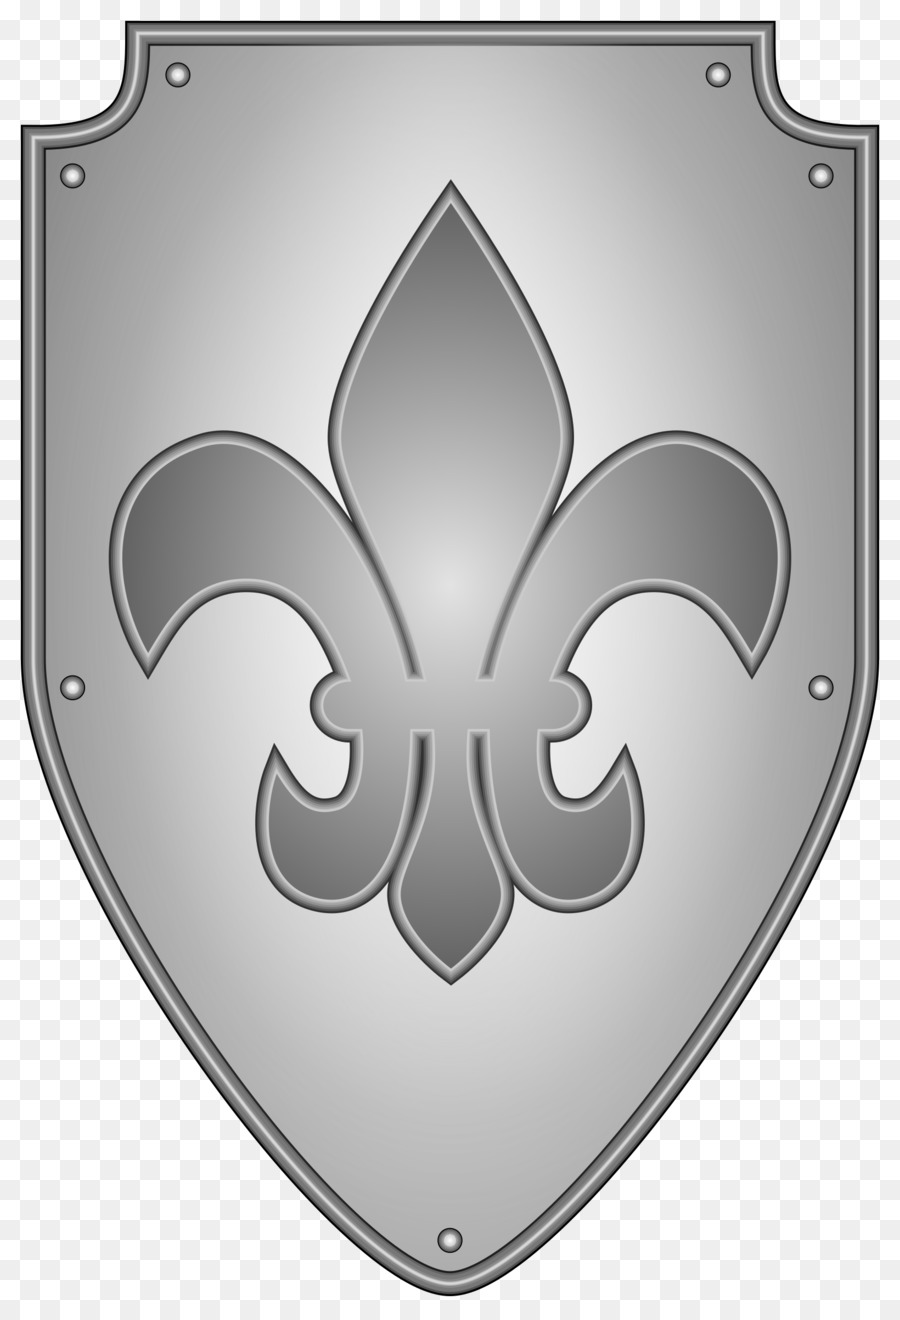 Рыцарский щит